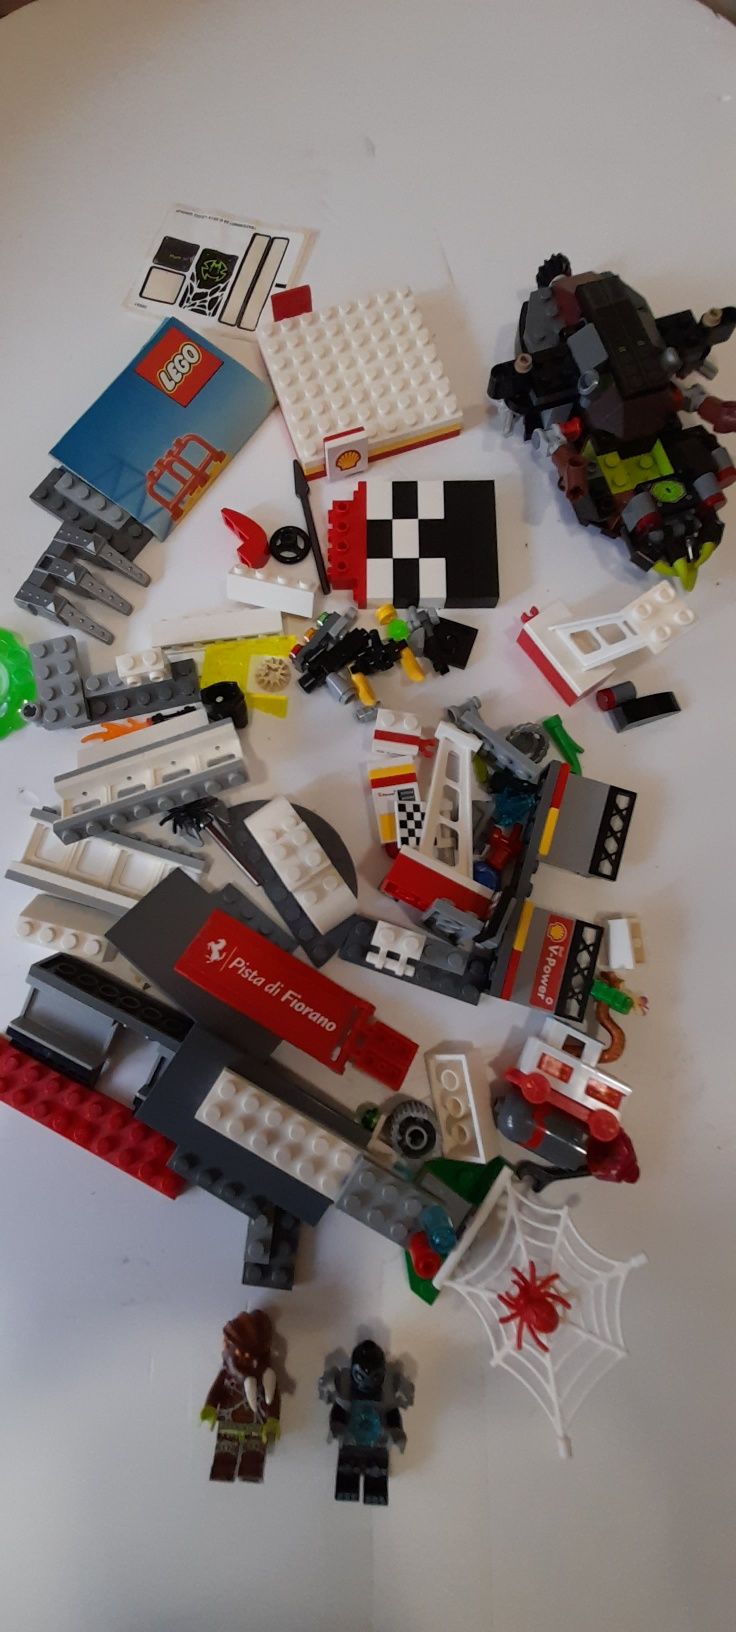 Колекция Лего Lego  оригинал